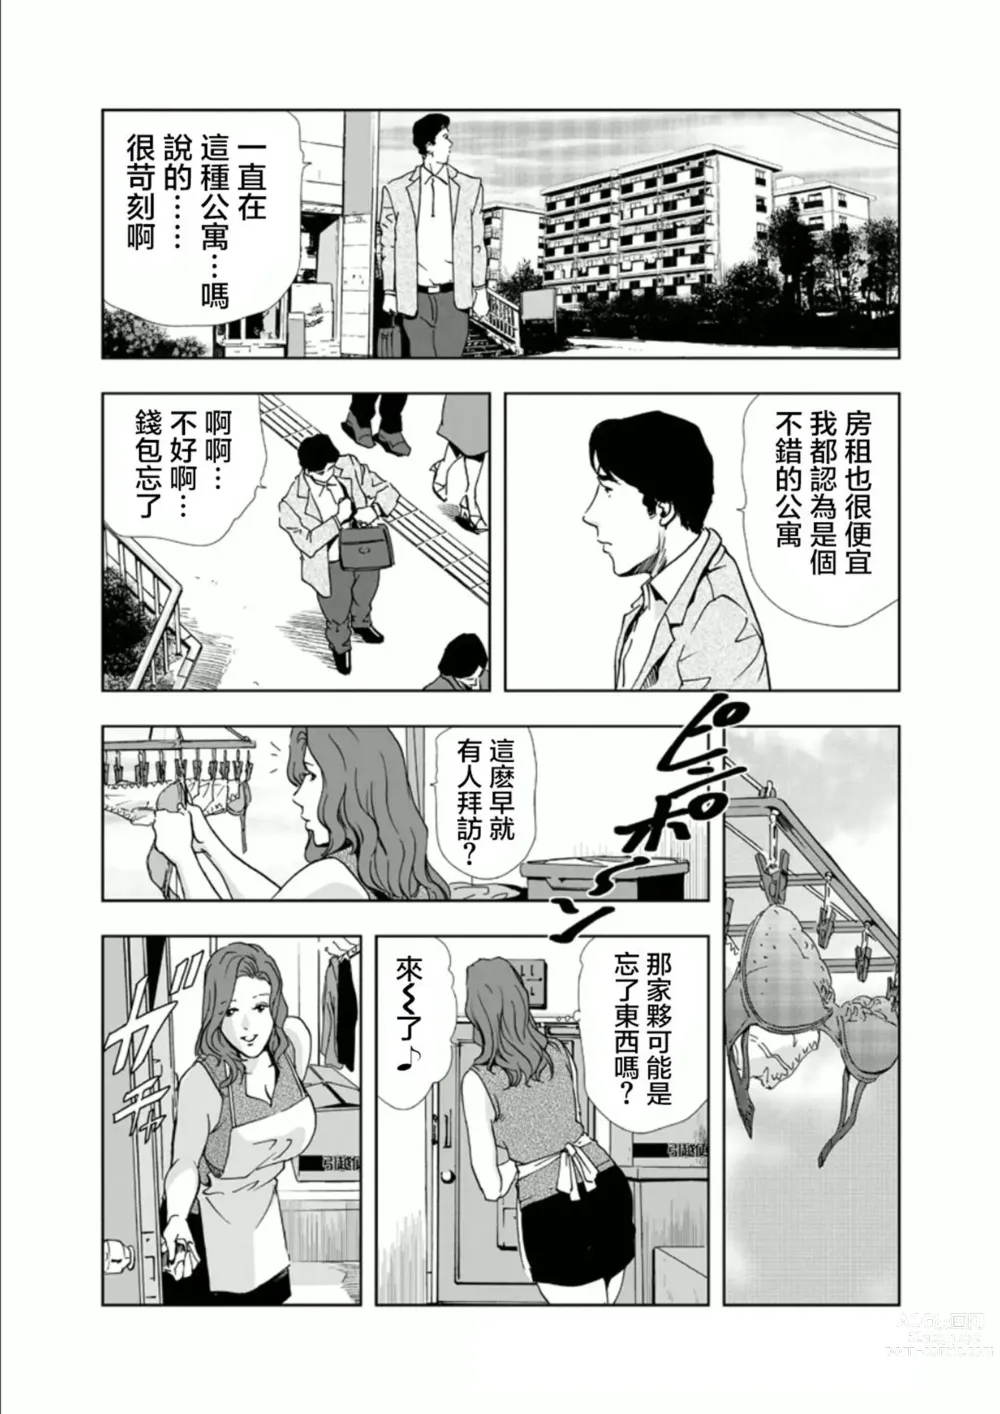 Page 4 of manga Netorare 1